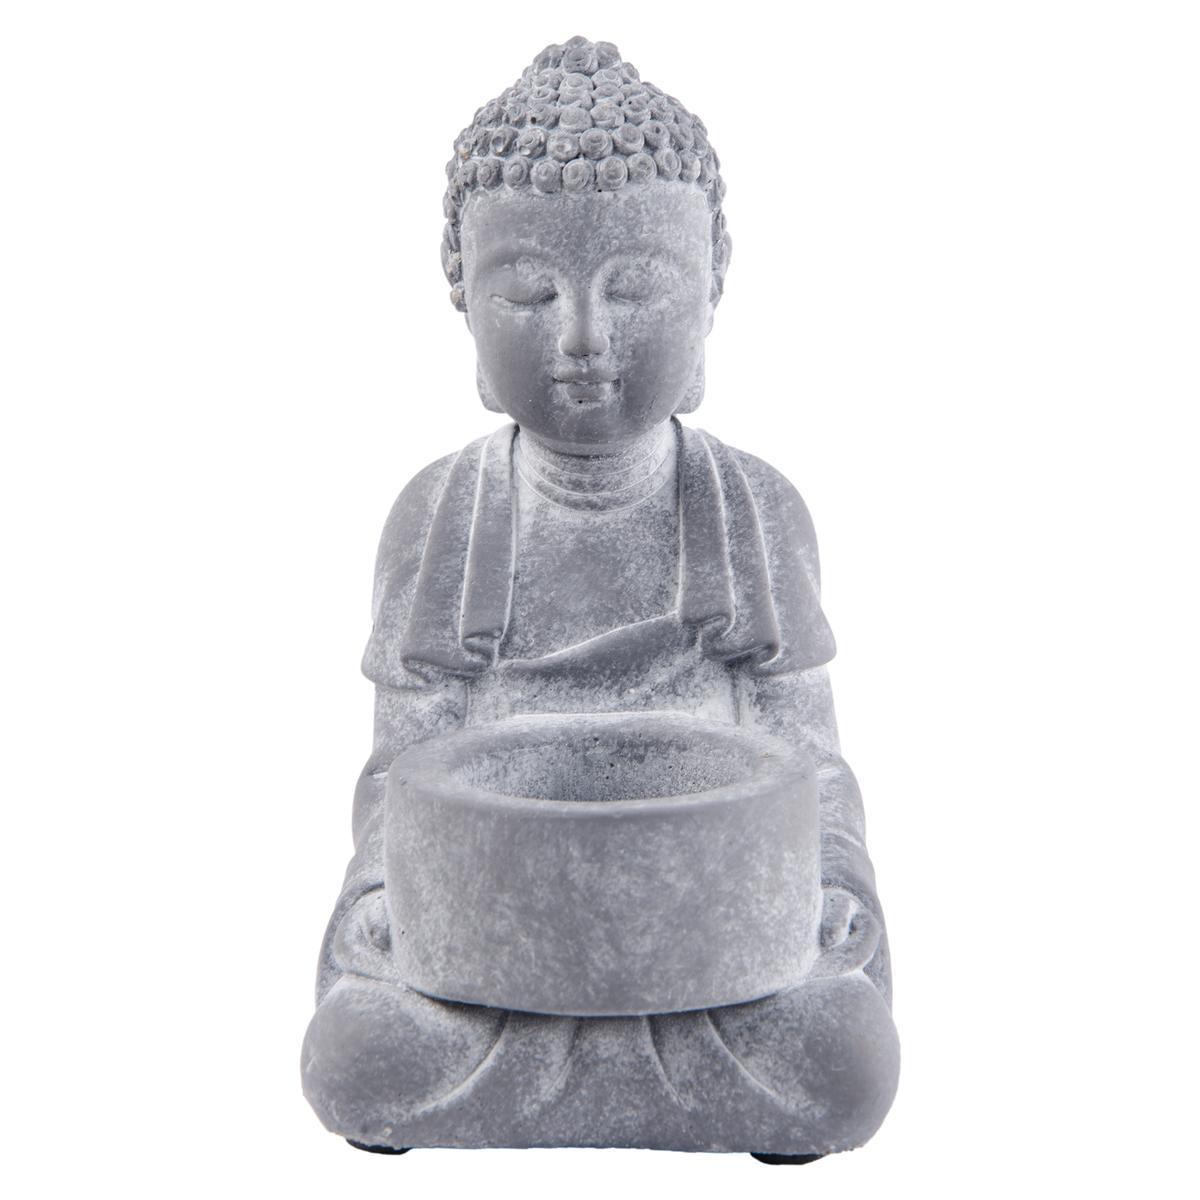 Photophore Bouddha - Ciment - 9 x 8,5 x H 16 cm - 2 modèles au choix